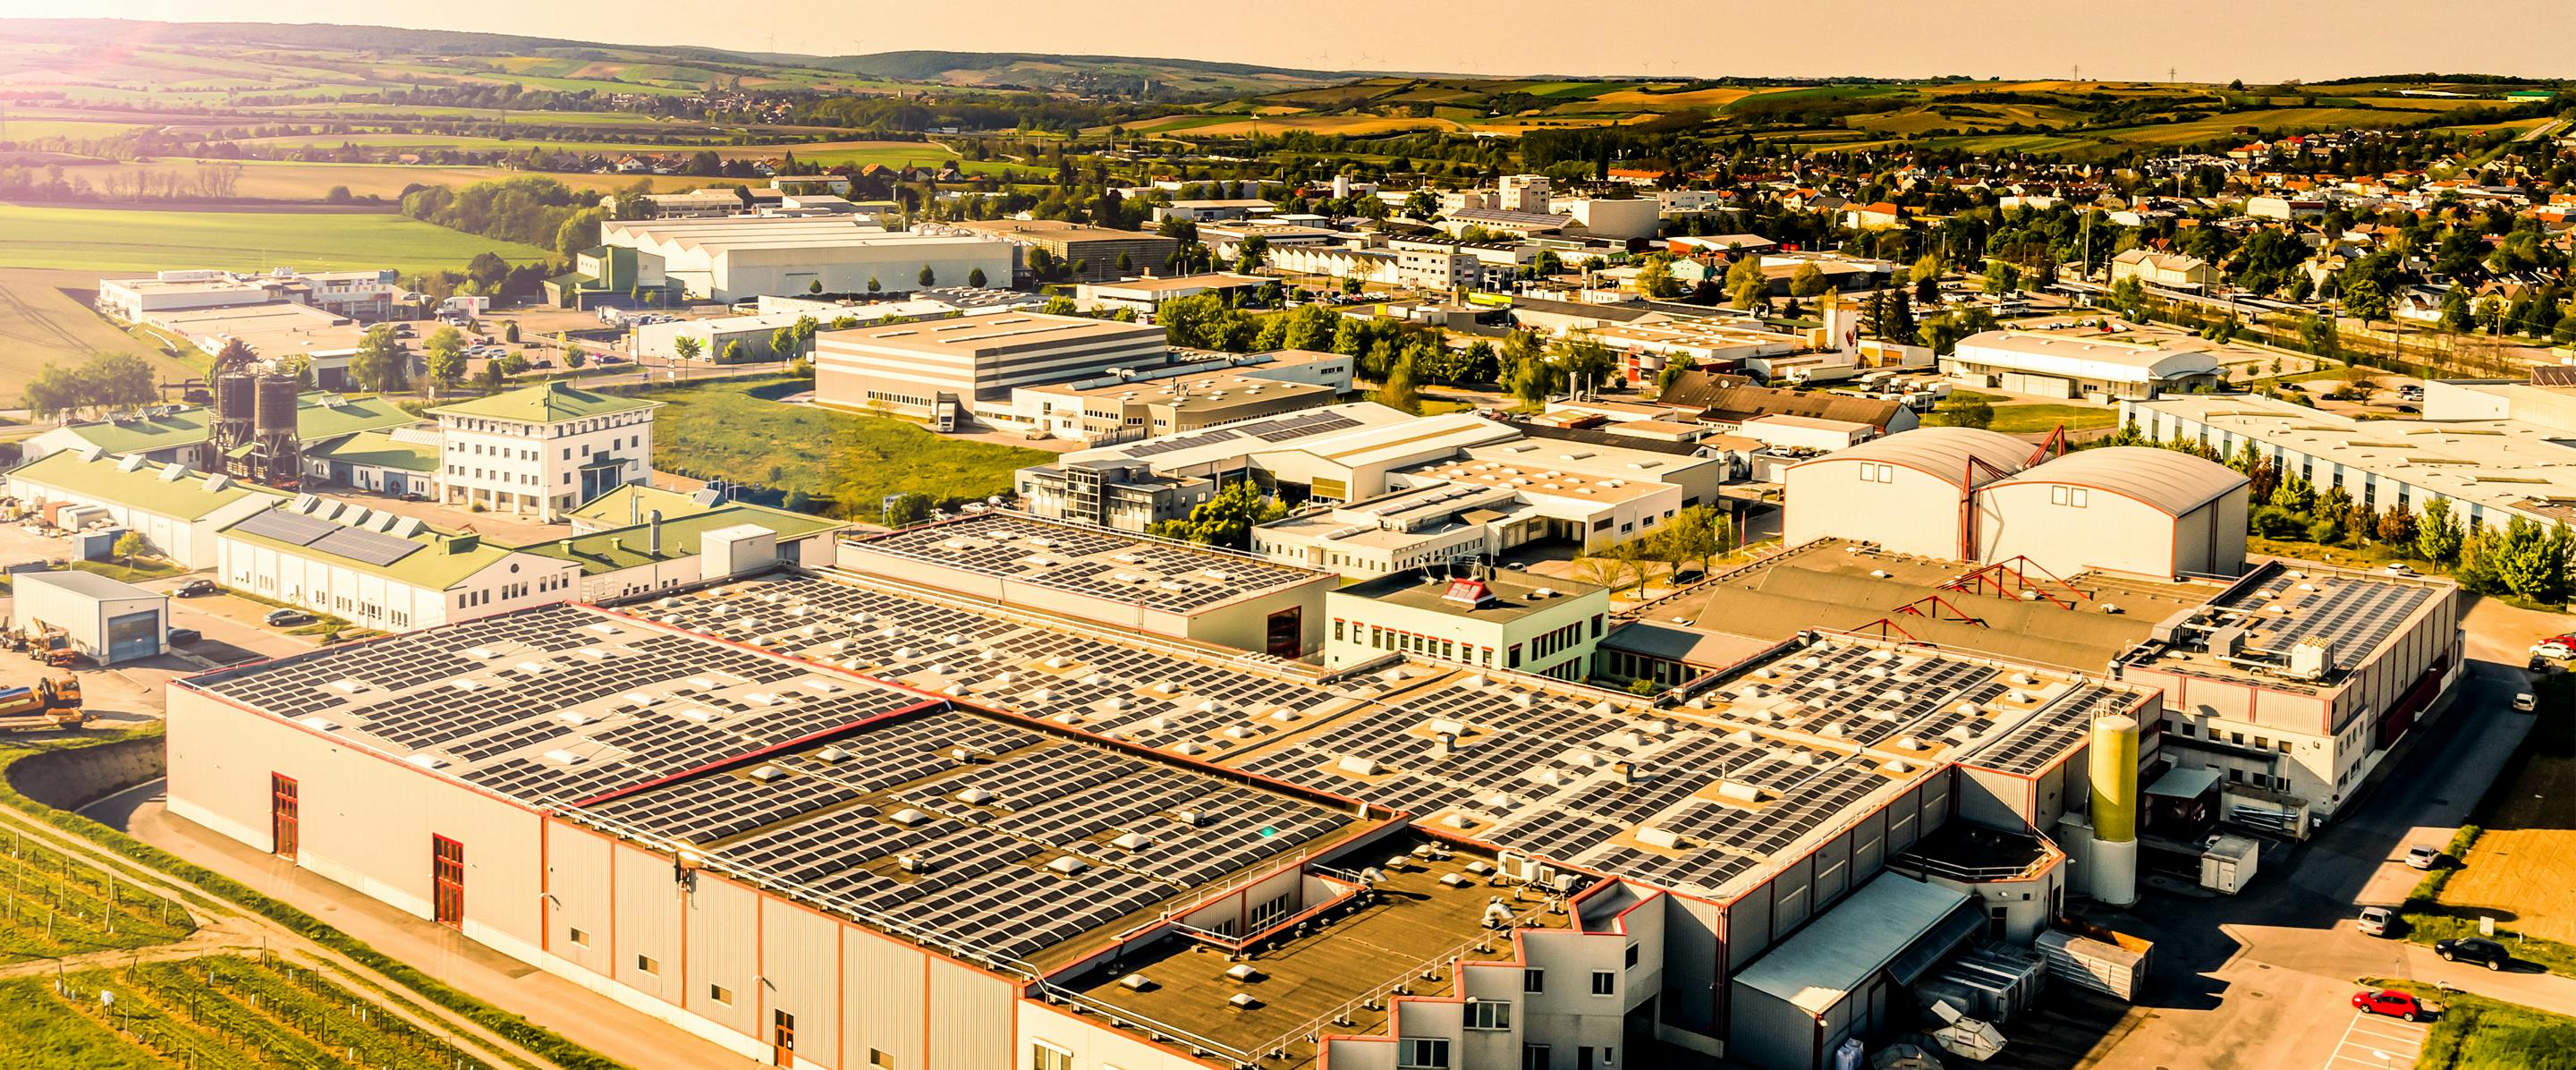 Здание компании Котани в Волькерсдорфе сфотографировано с высоты птичьего полета